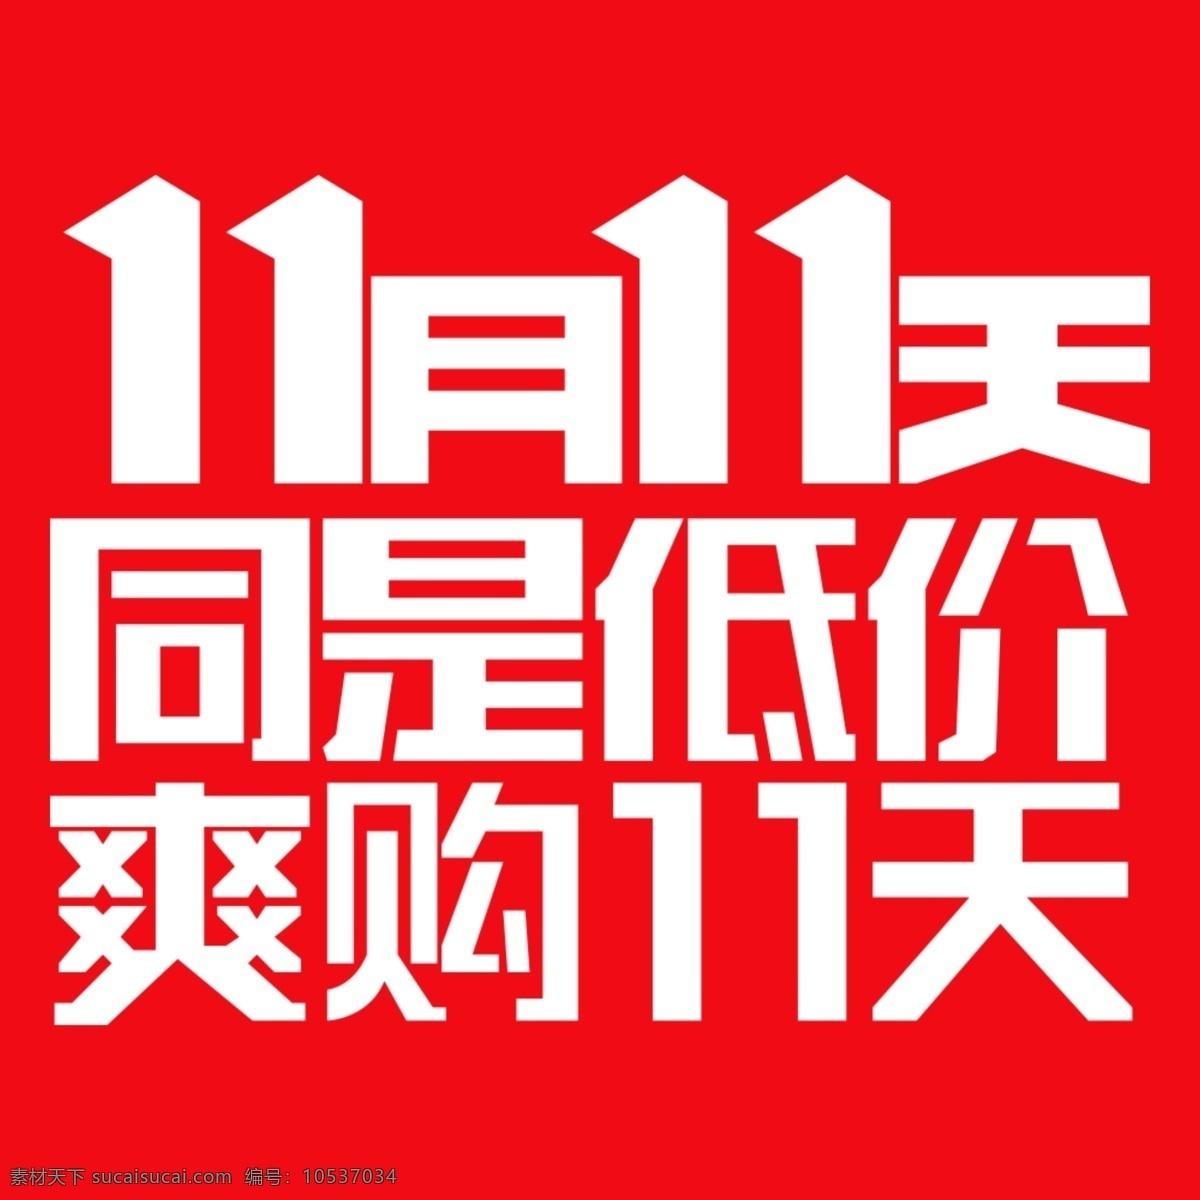 jd 双十 字体 月 天京 东 logo 11月11天 京东 活动 京东素材 红色